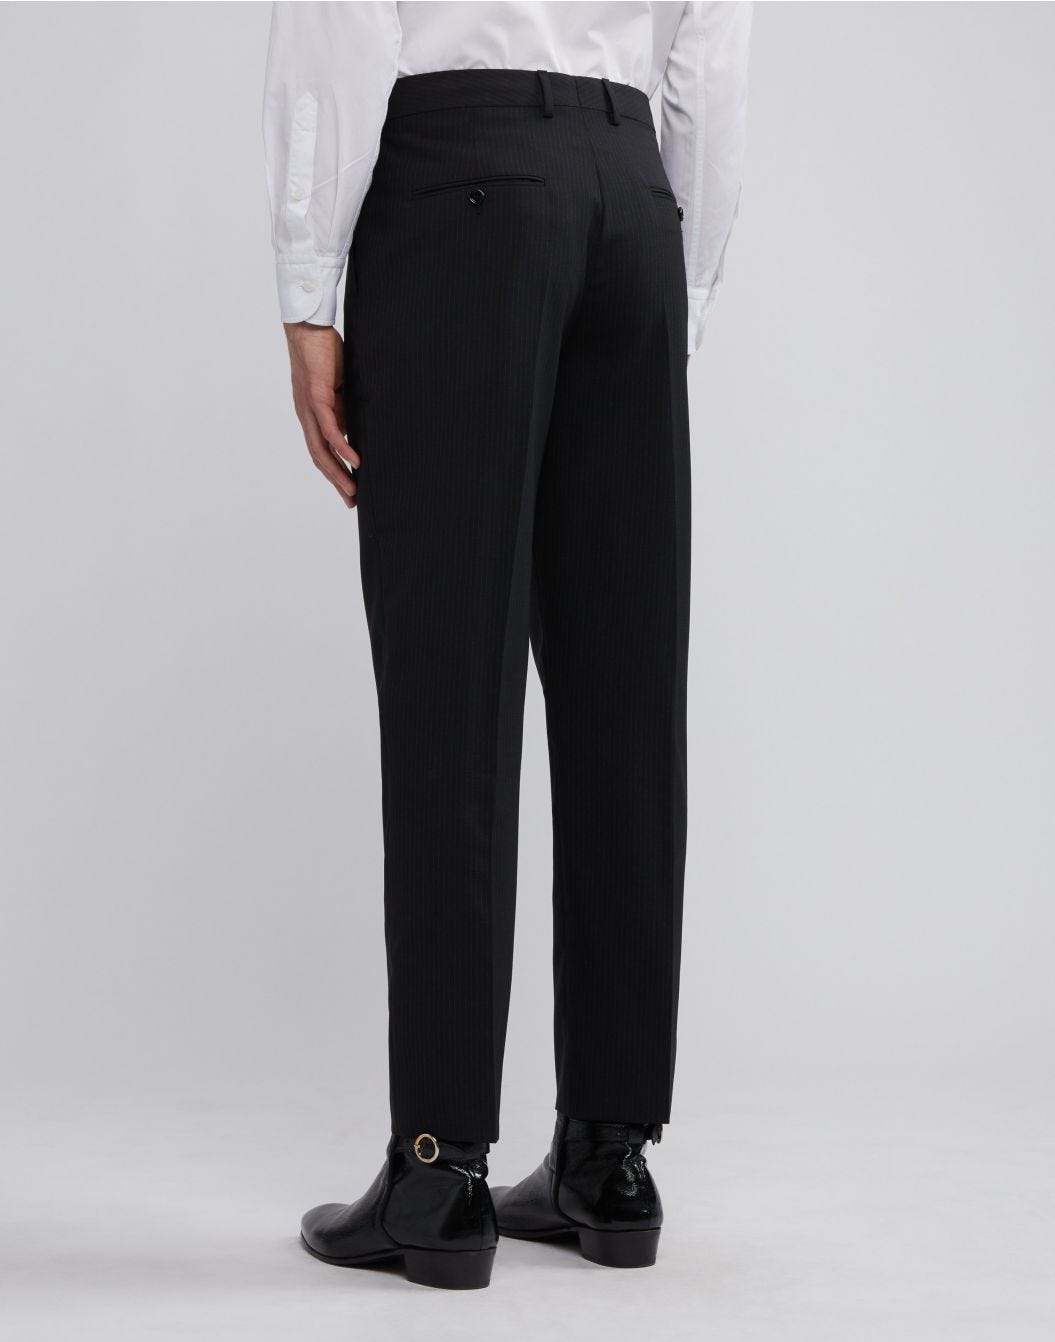 Pantalon noir à fines rayures contrastantes